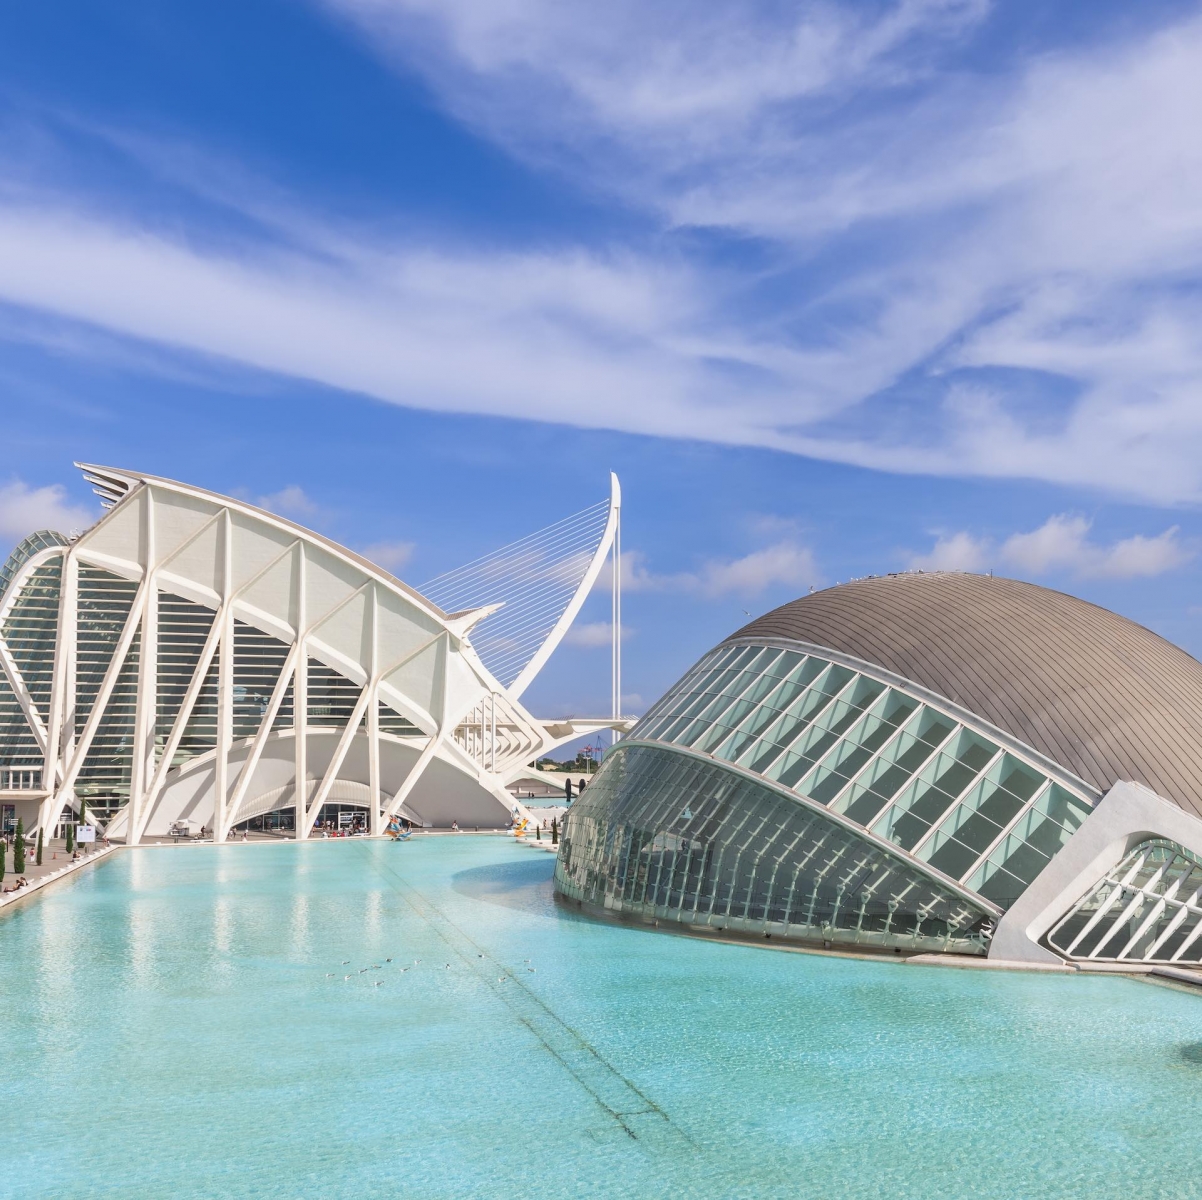 L'Hemisfèric è un edificio singolare e spettacolare, progettato da Santiago Calatrava, che rappresenta un grande occhio umano, l'occhio della saggezza.  Questo elemento simboleggia lo sguardo e l'osservazione del mondo che i visitatori scoprono attraverso sorprendenti proiezioni audiovisive.